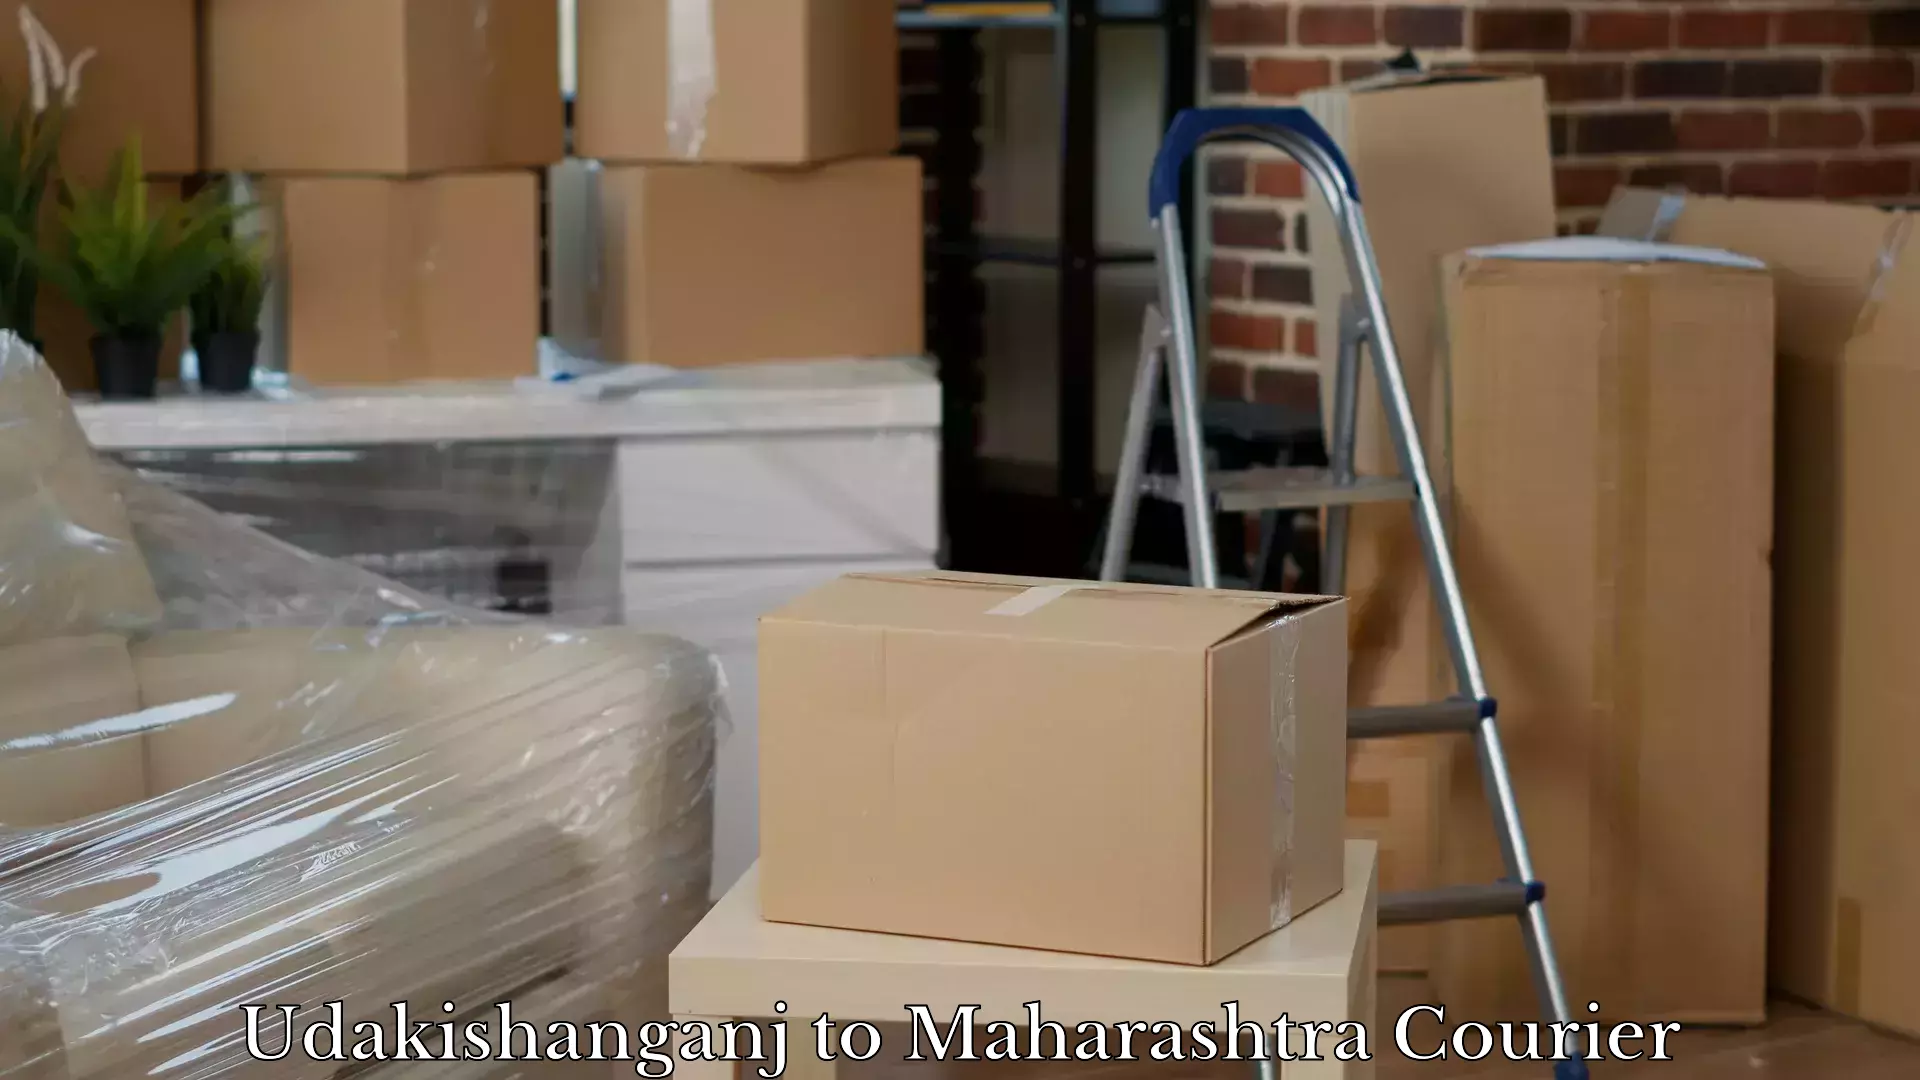 Luggage delivery optimization in Udakishanganj to Kolhapur